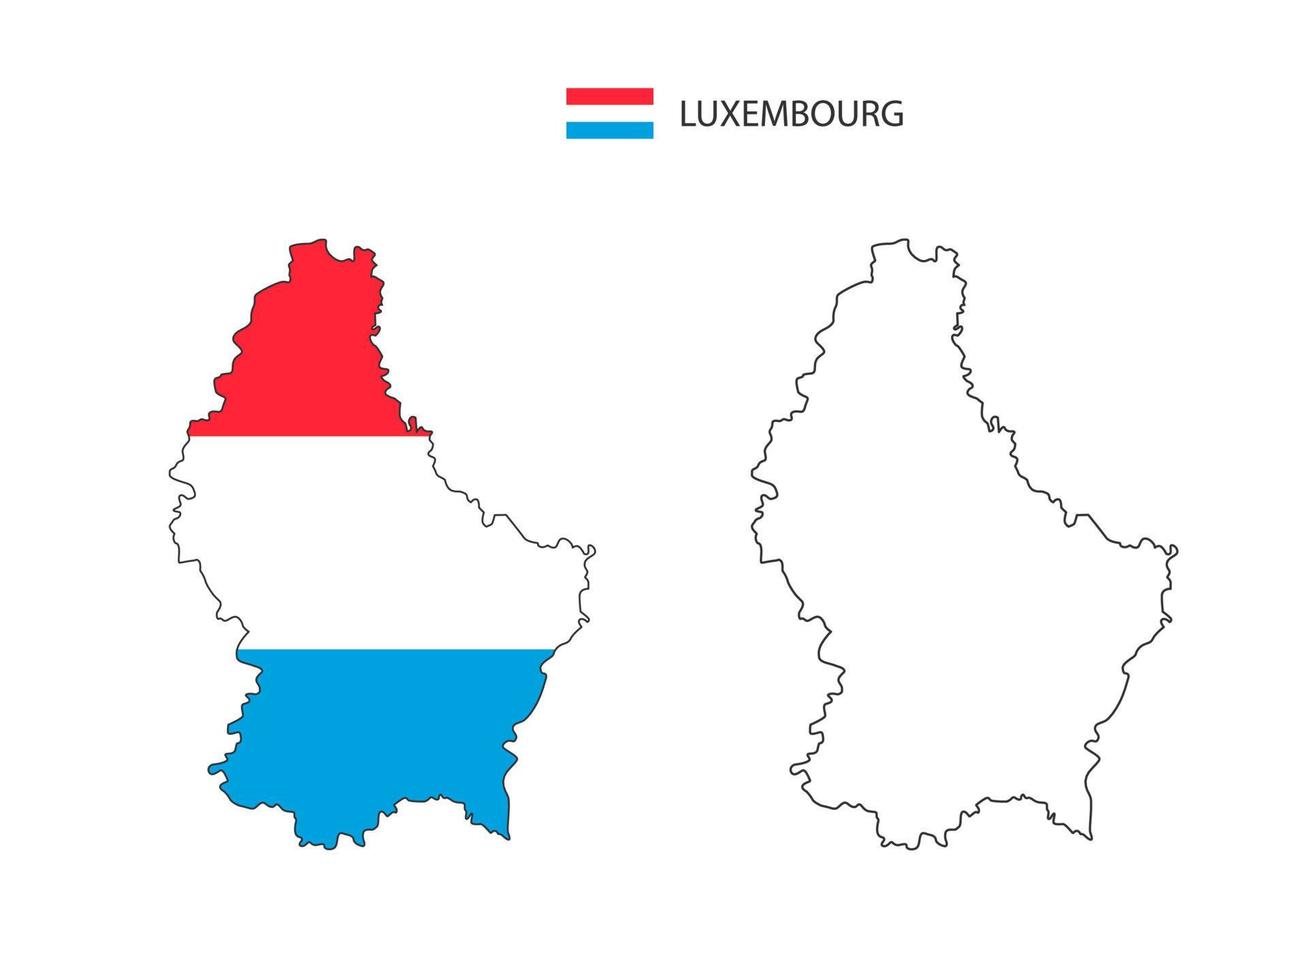 vector de ciudad de mapa de luxemburgo dividido por estilo de simplicidad de contorno. tiene 2 versiones, versión de línea delgada negra y versión de color de bandera de país. ambos mapas estaban en el fondo blanco.